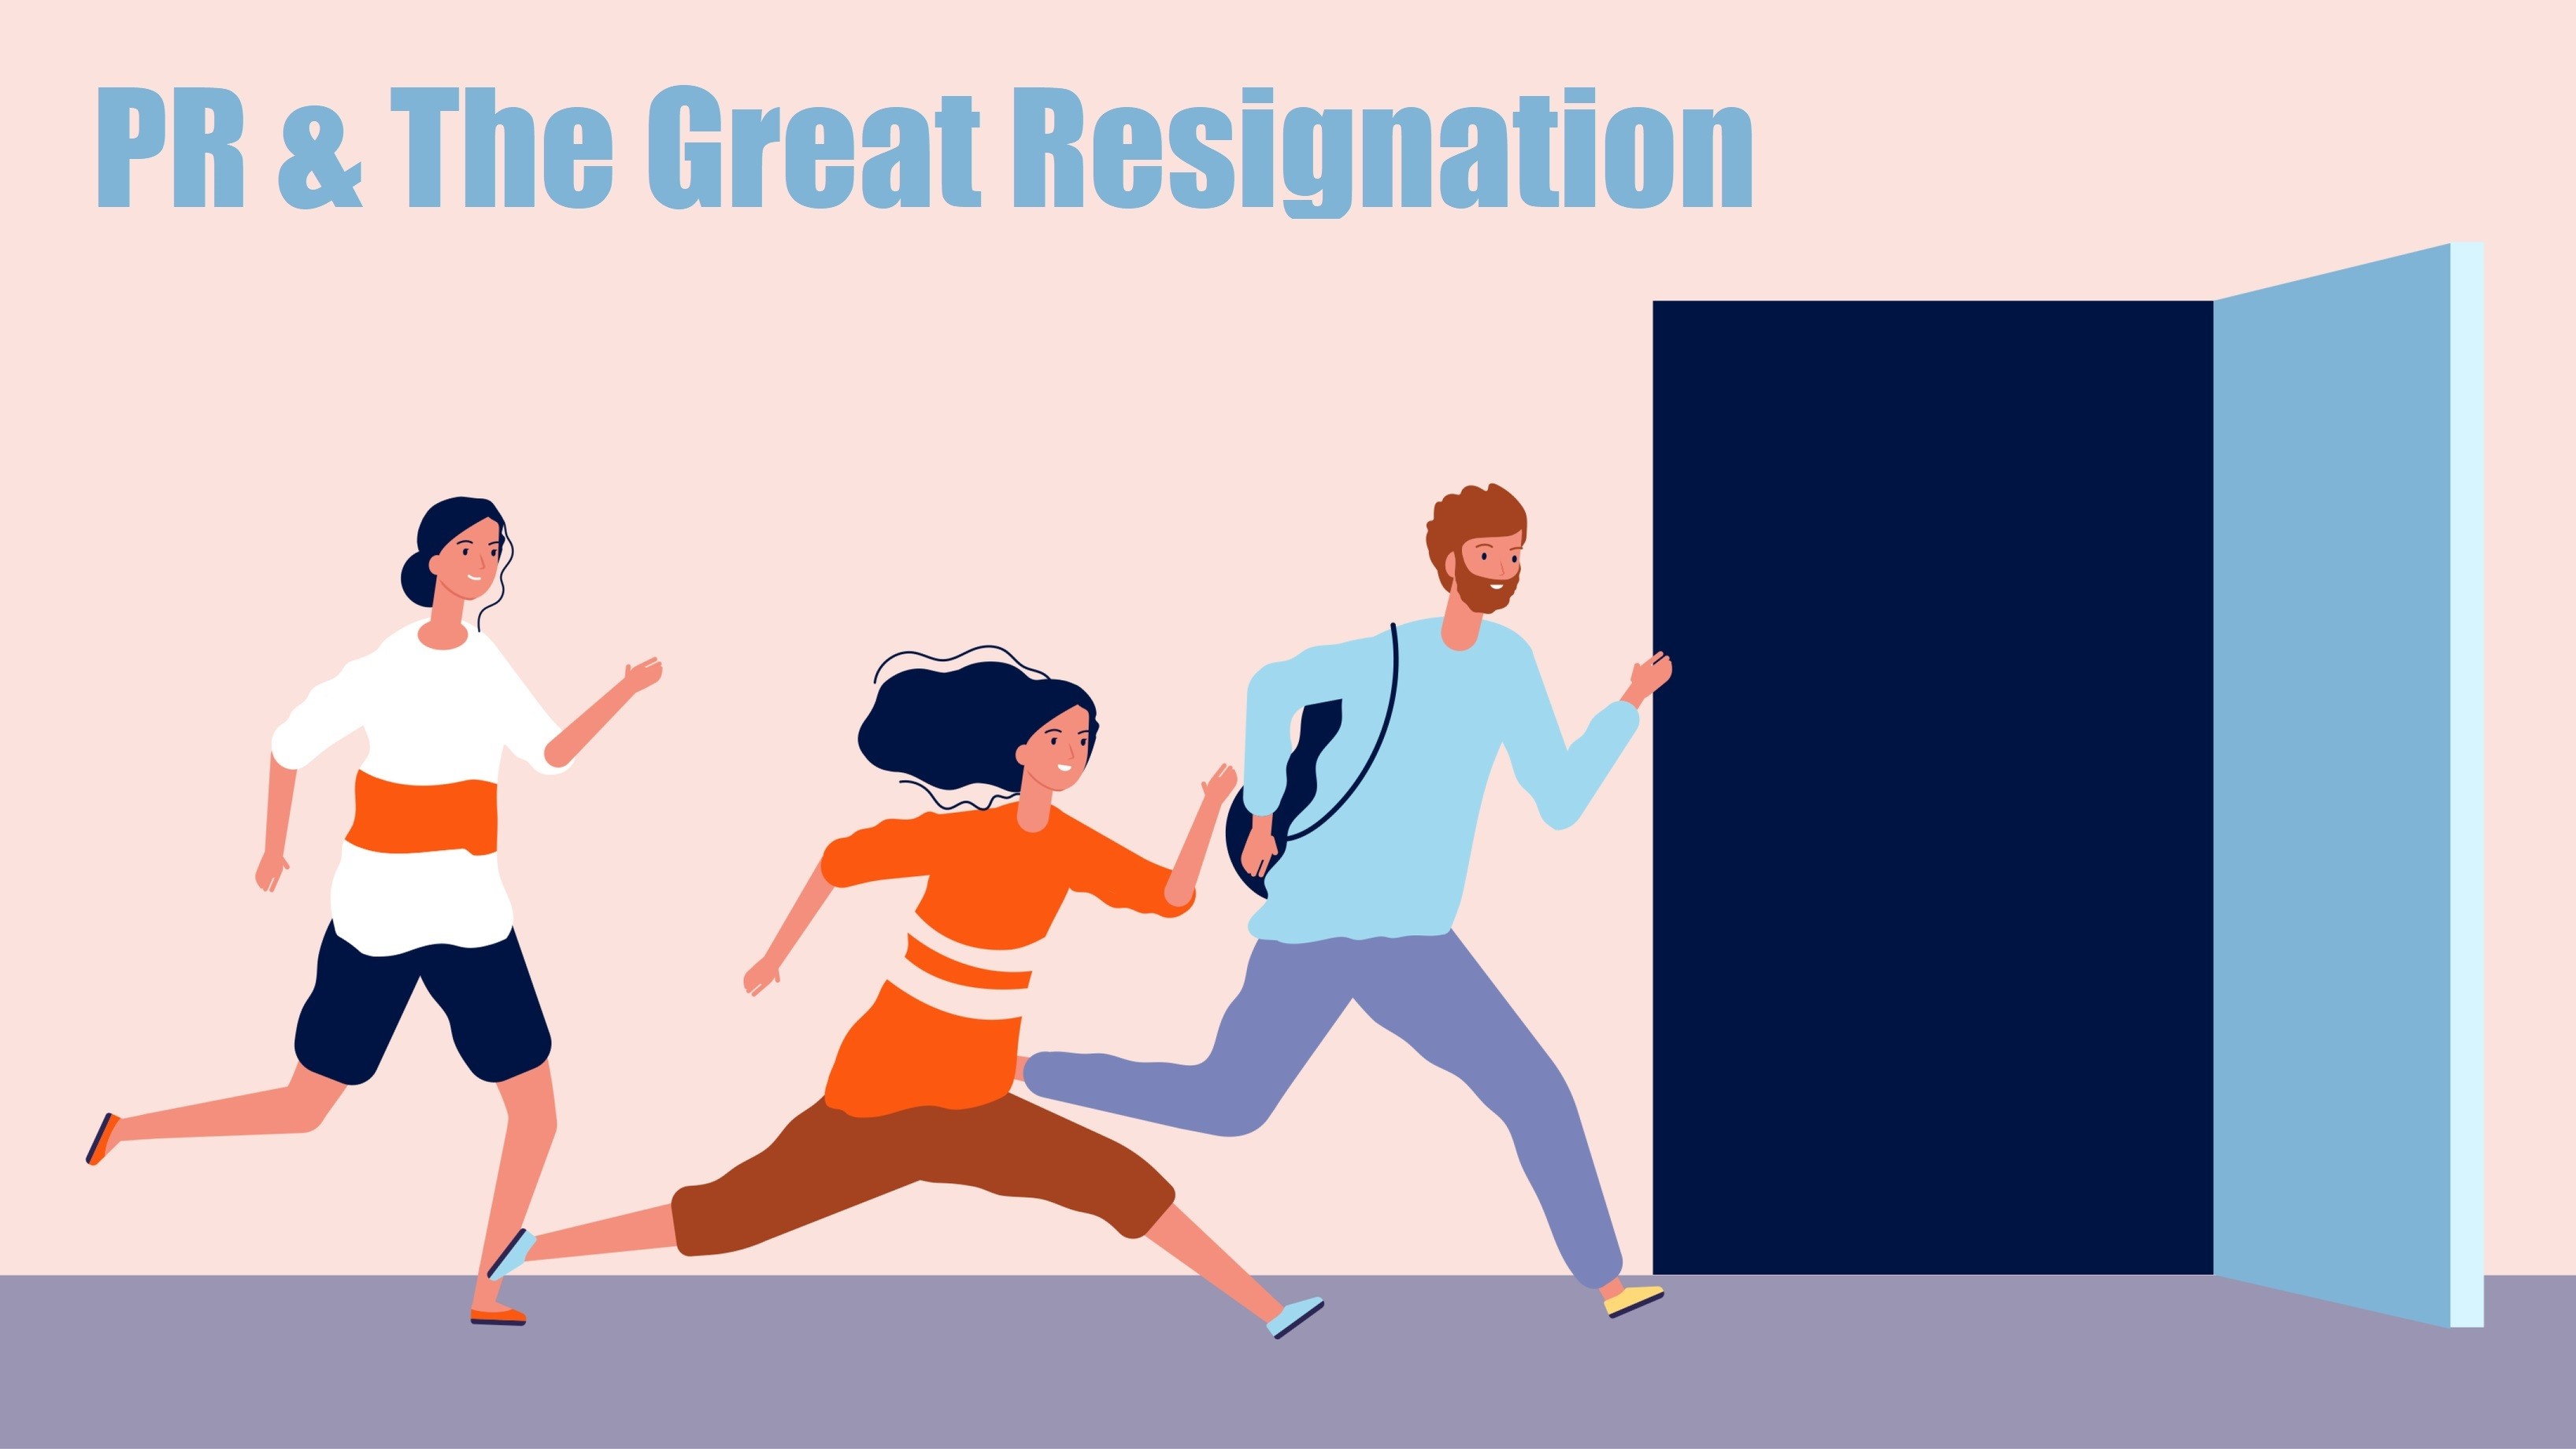 PR & Great Resignation